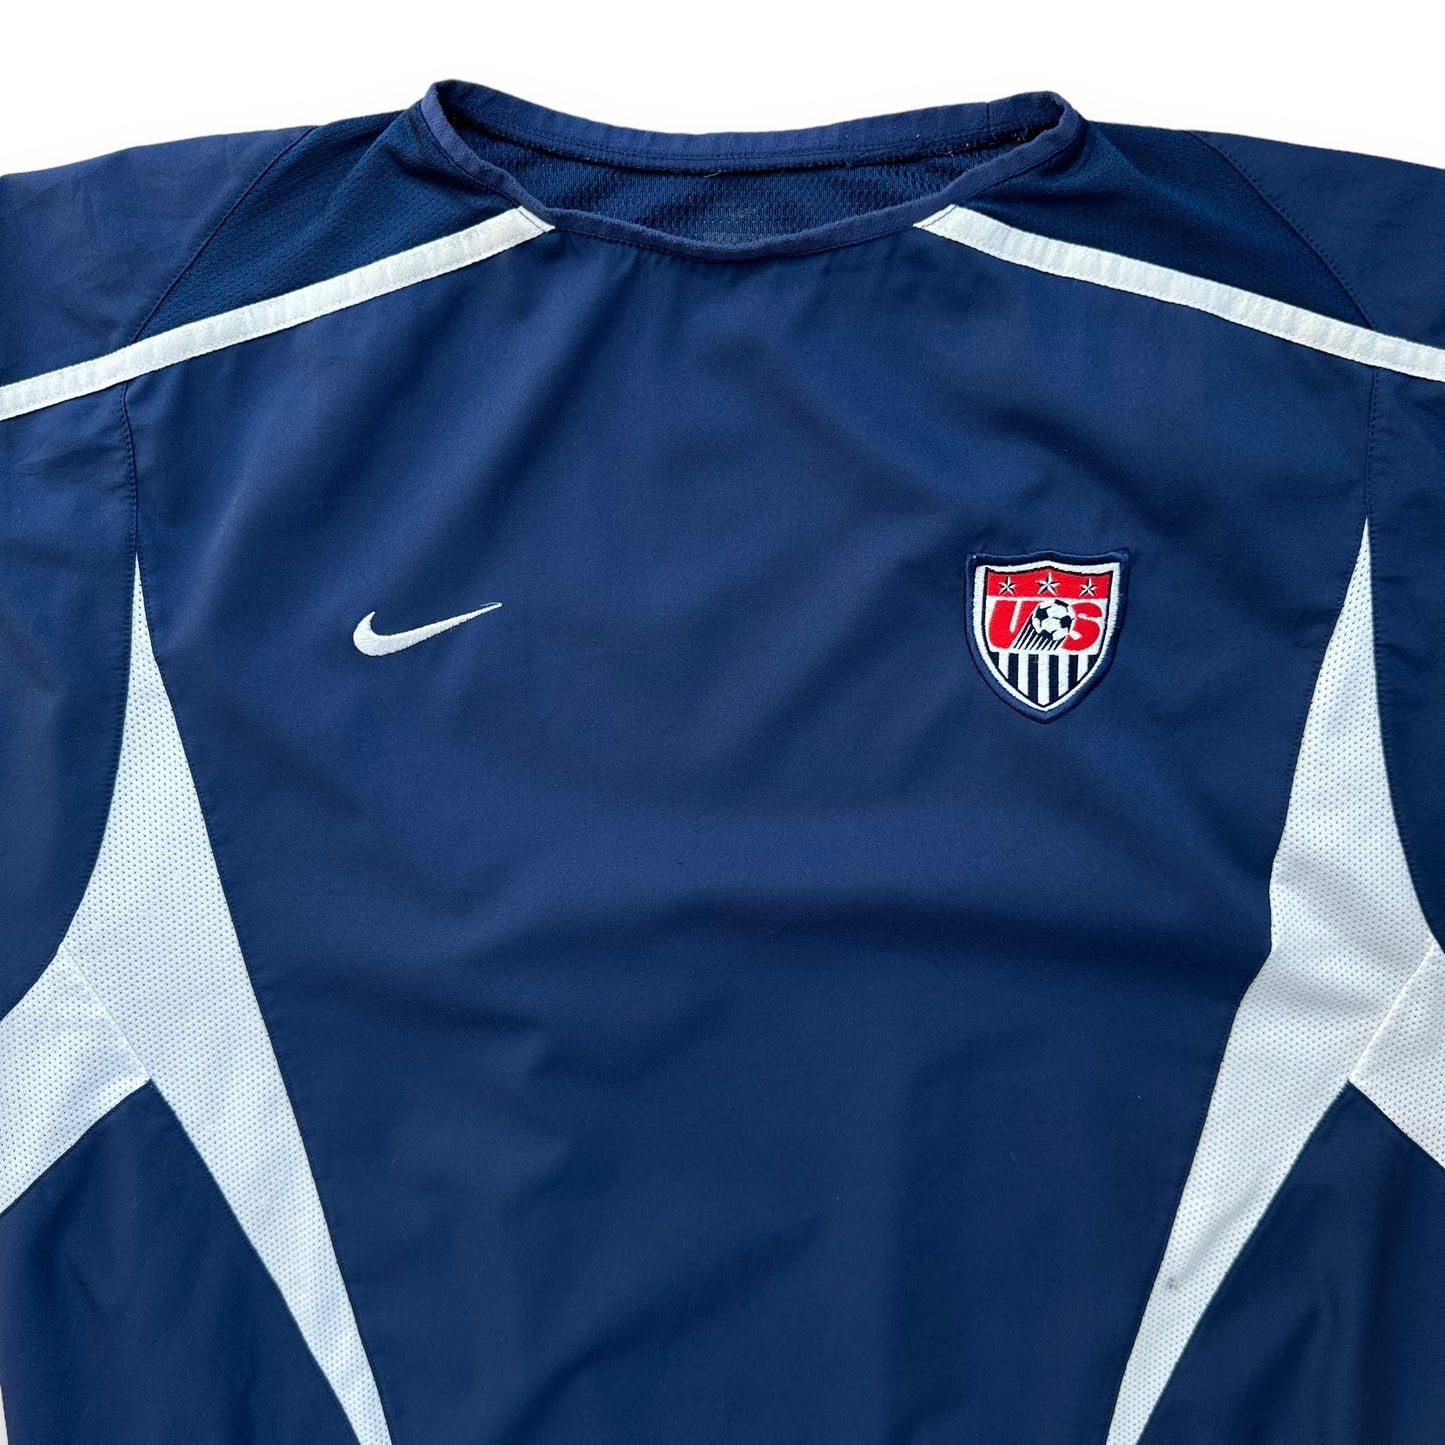 USA 2002 Away Shirt (L)